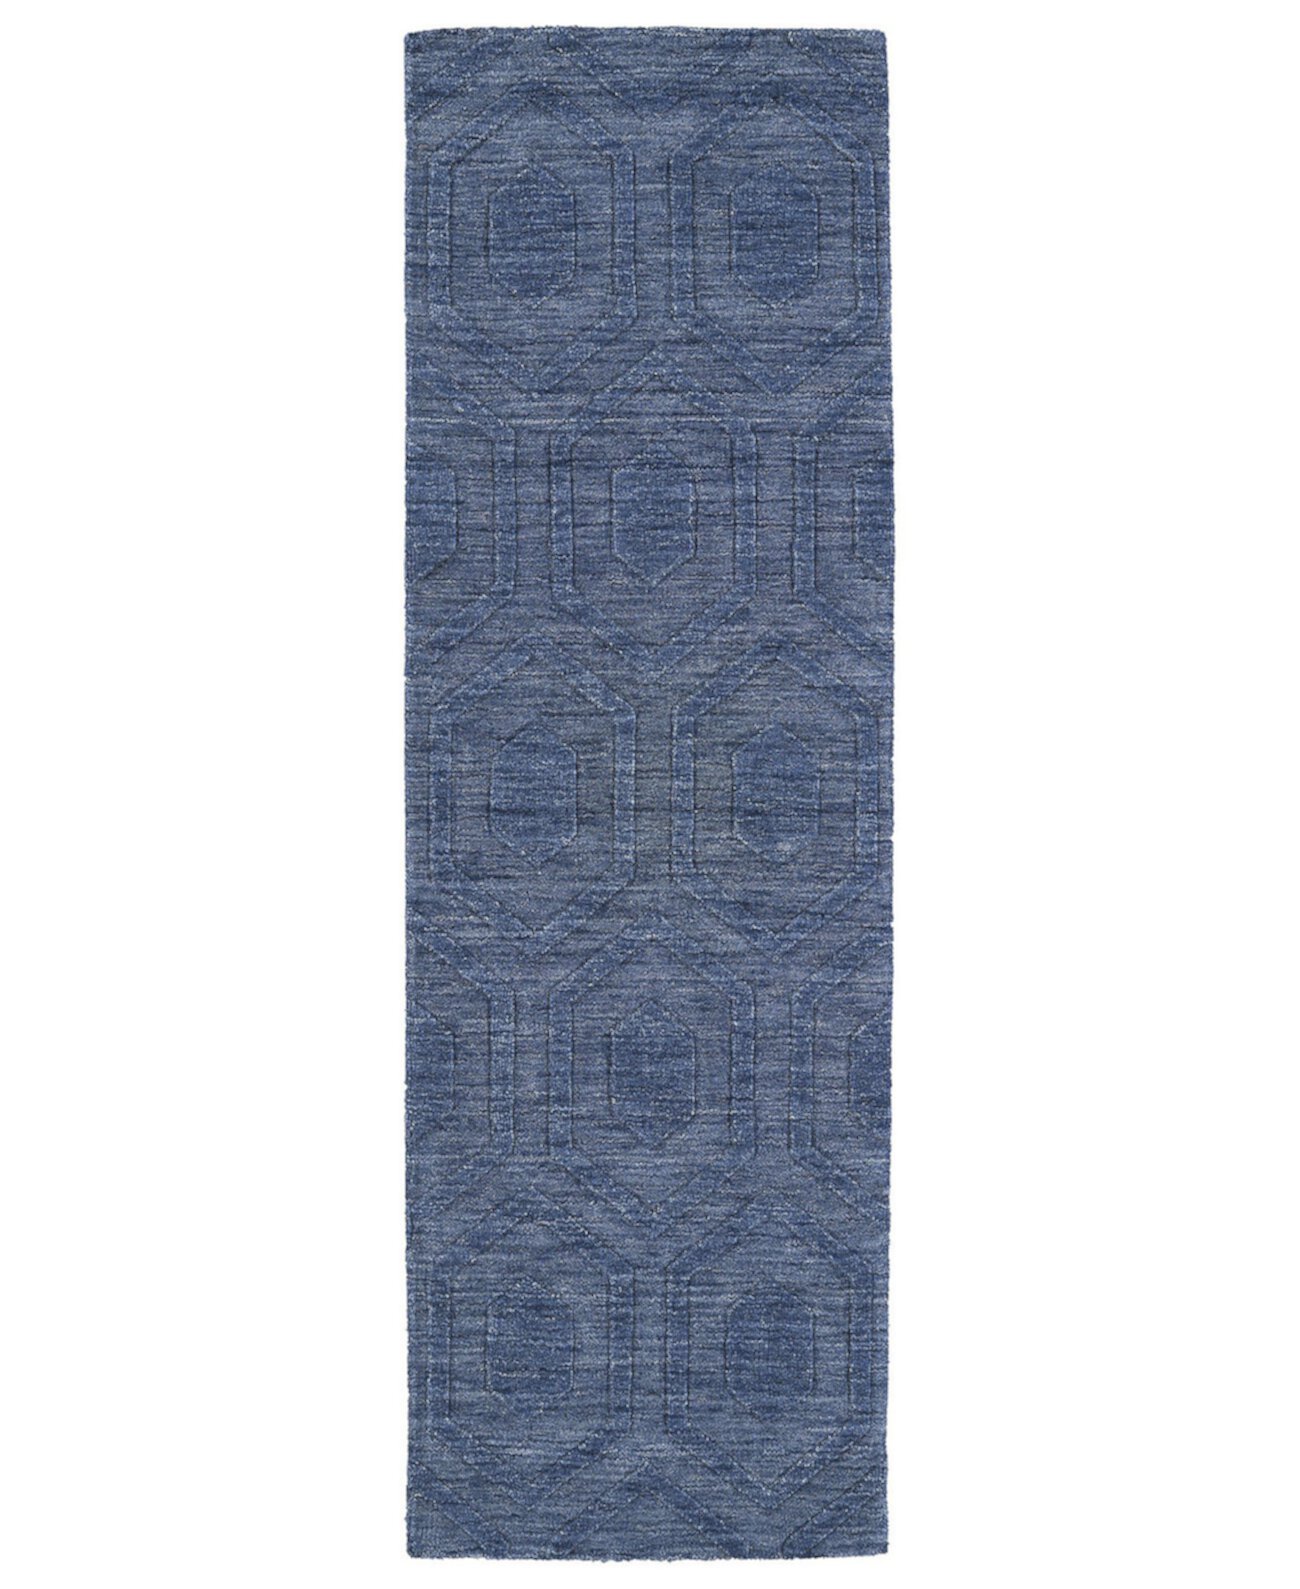 Отпечатки Modern IPM01-17 Синий коврик для дорожки размером 2 фута 6 x 8 футов Kaleen